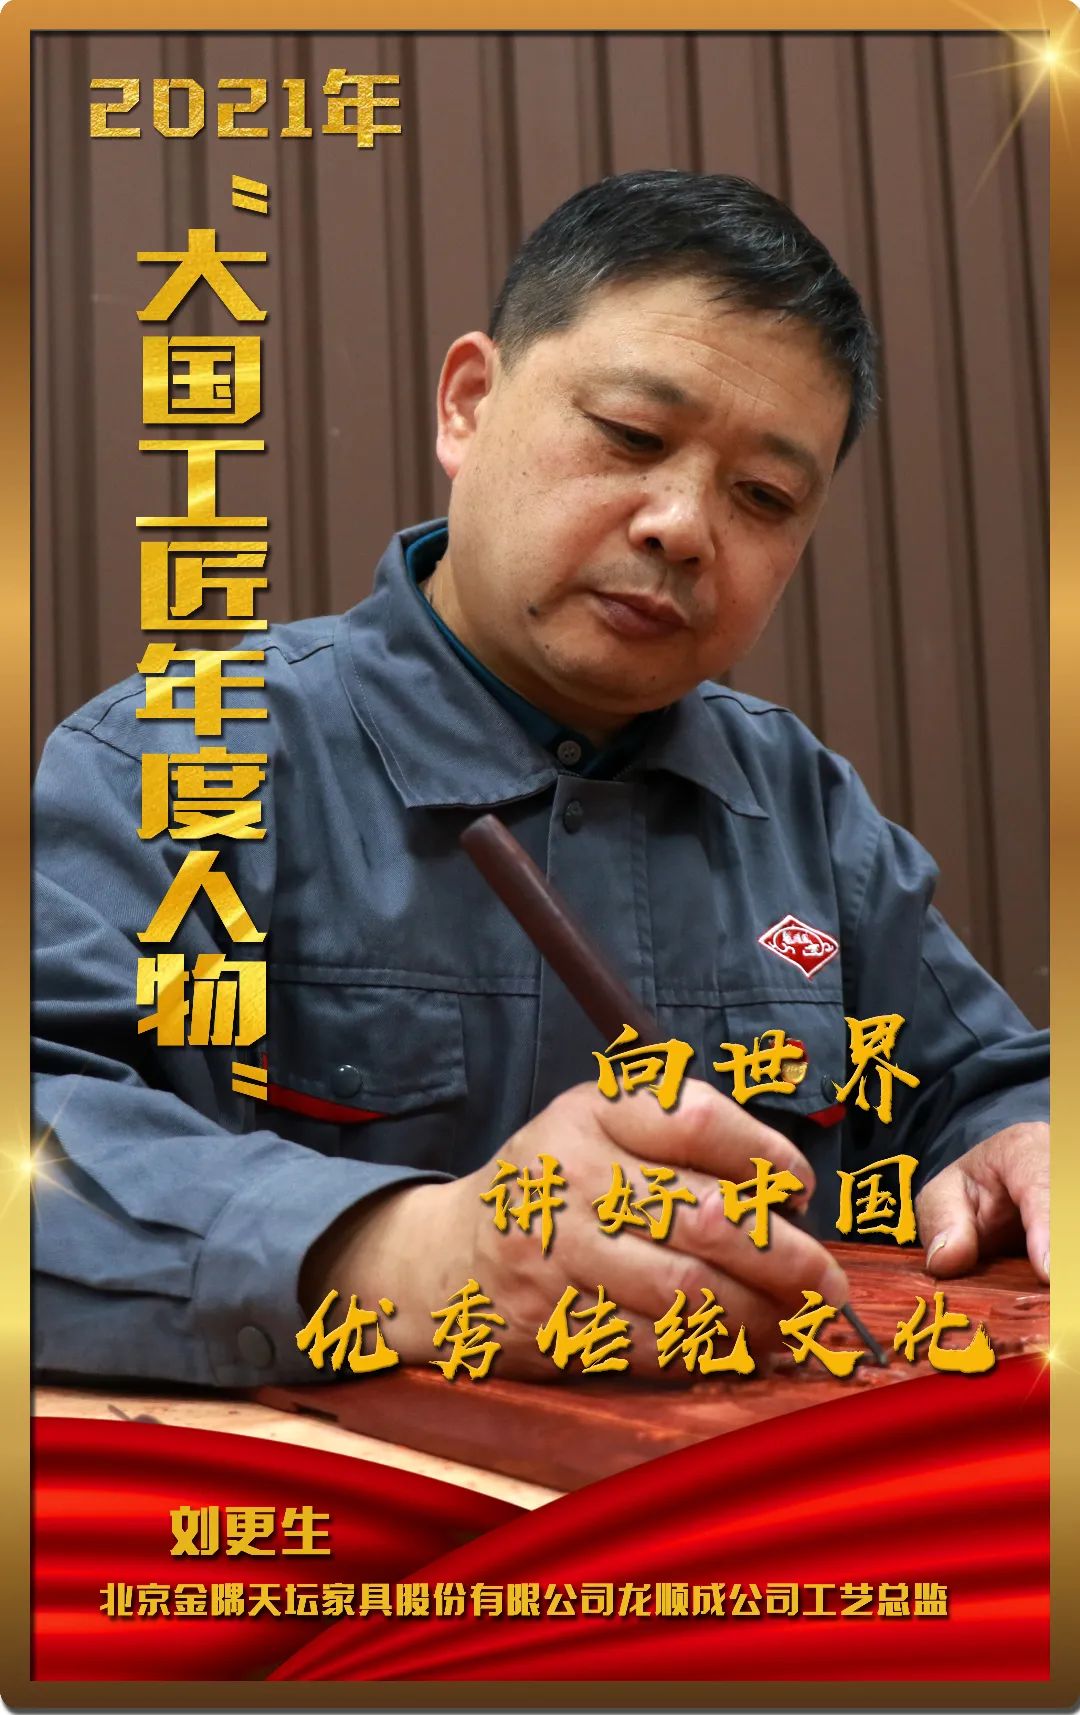 2021年大国工匠年度人物在广州揭晓张路明入选